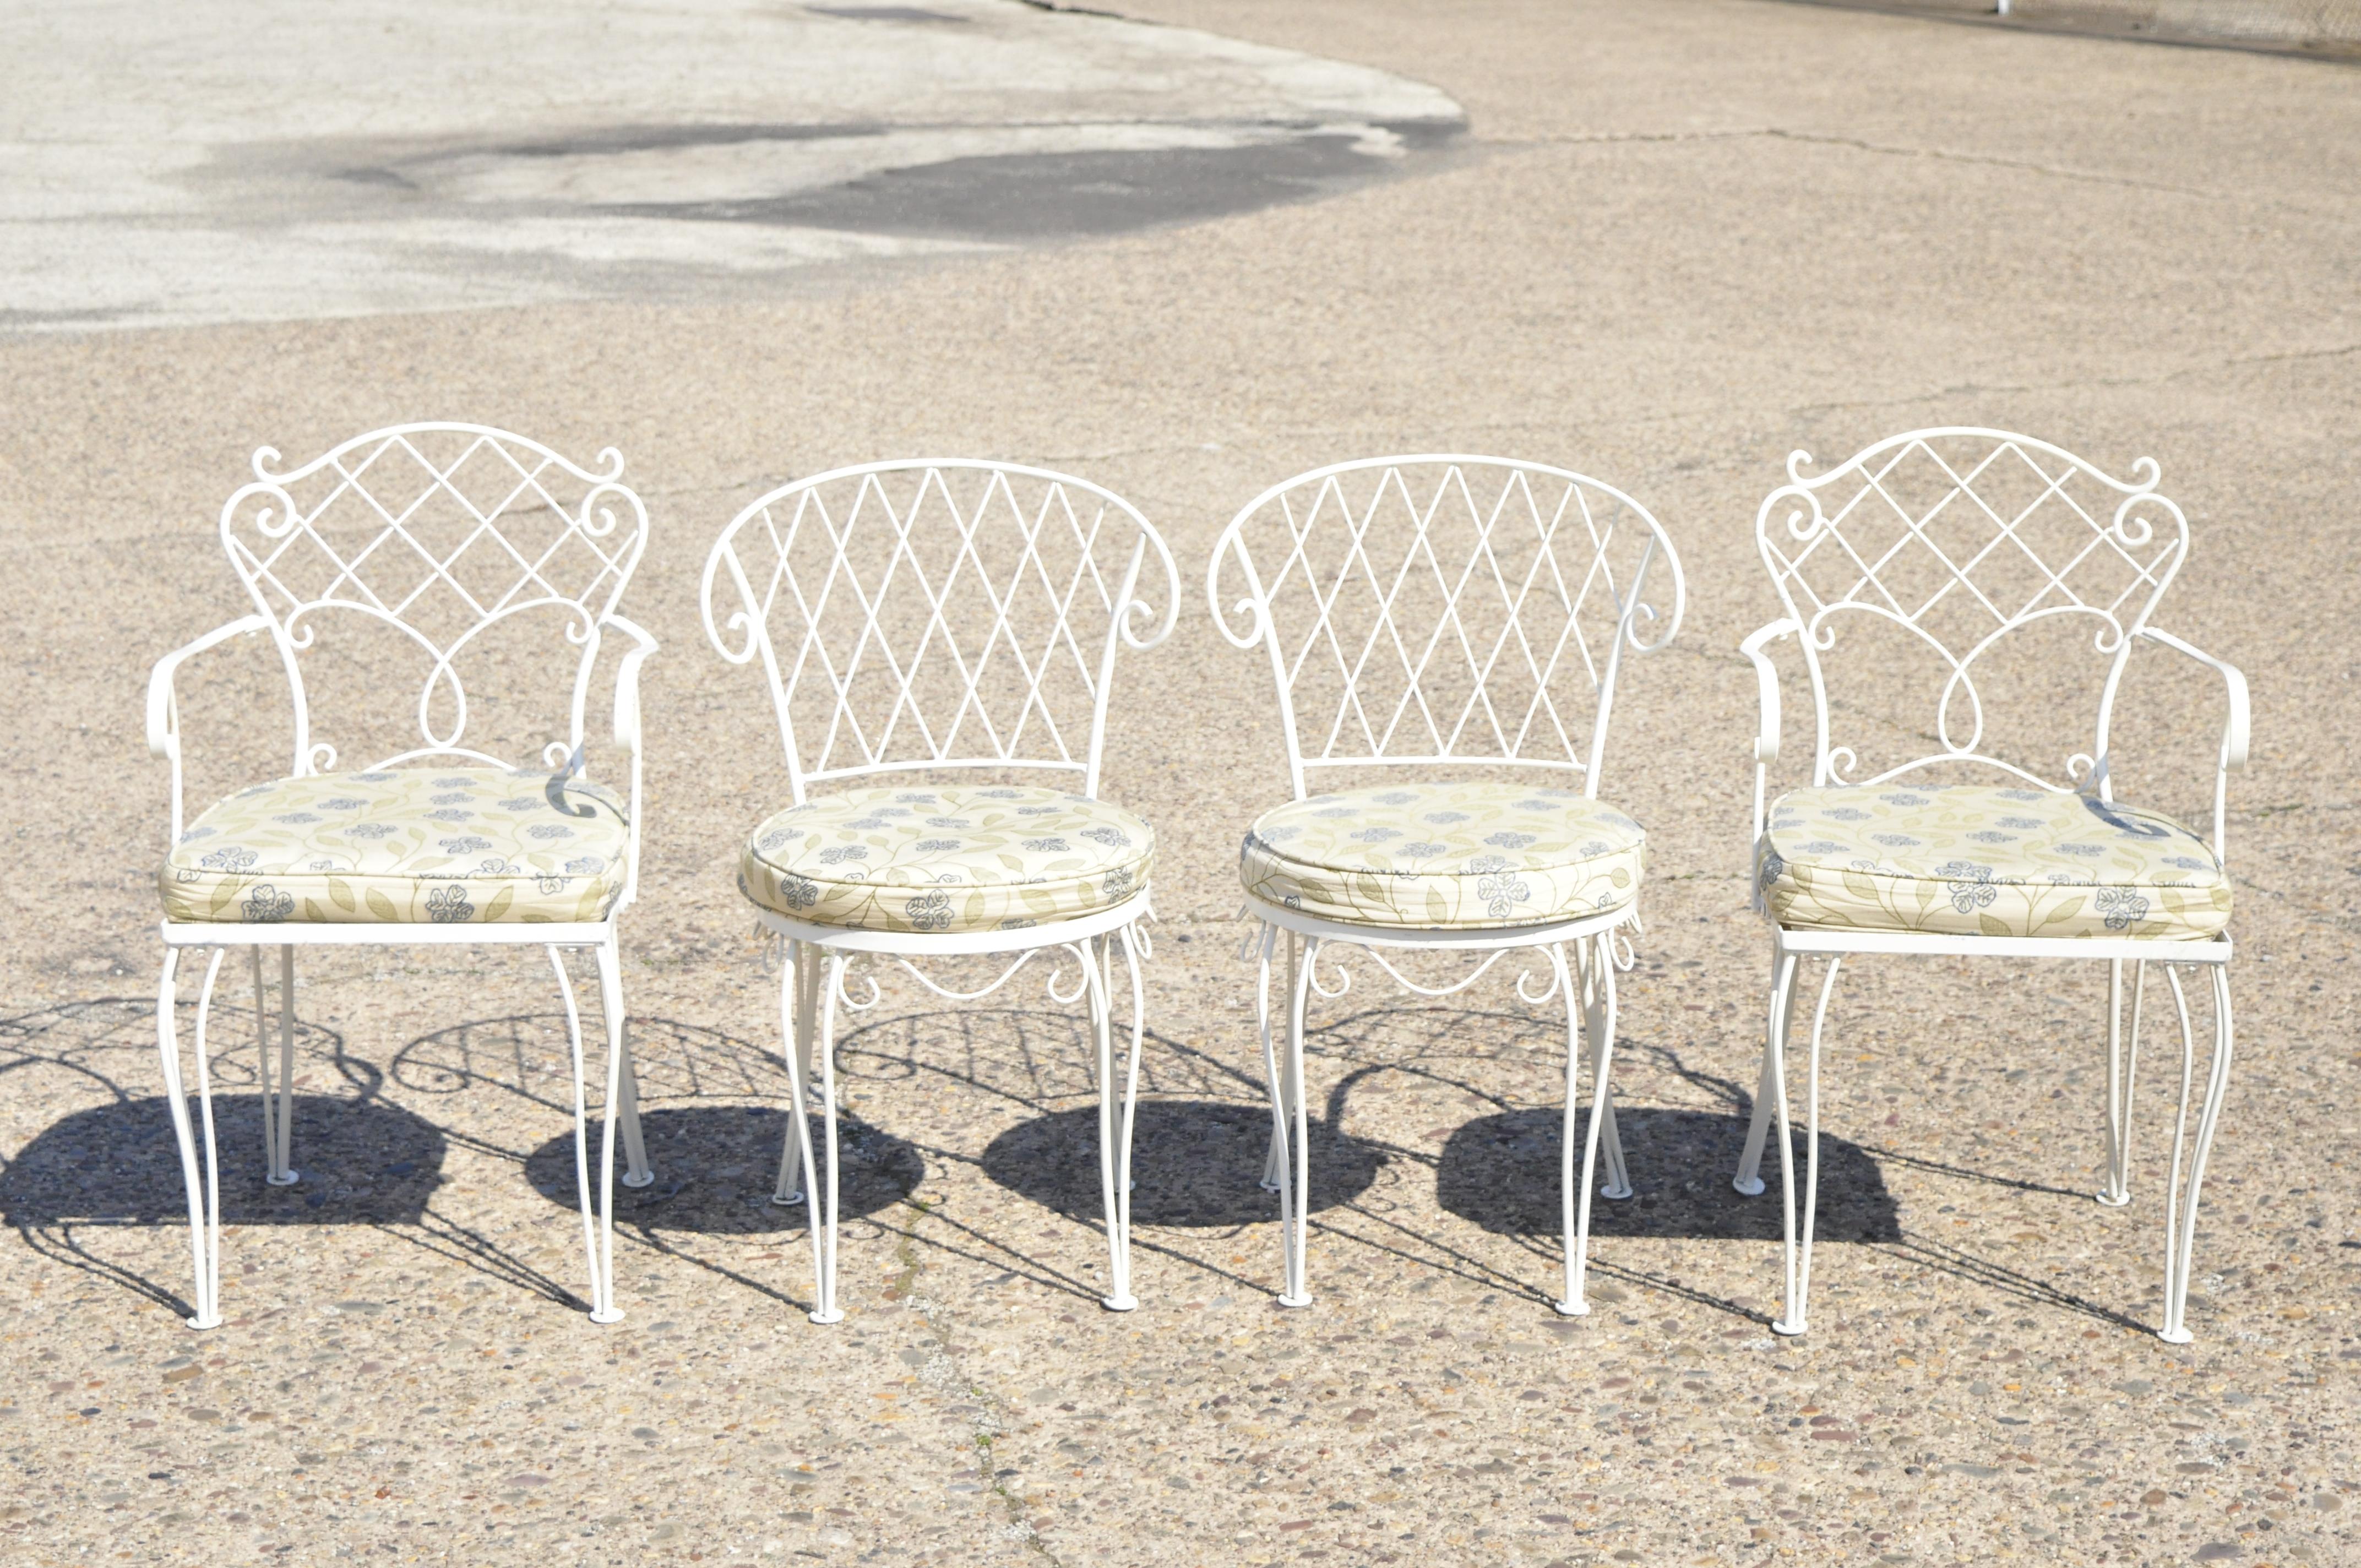 Weißes Schmiedeeisen Französisch Land viktorianischen Stil Lattice Garden Patio Ess-Set - Tisch und 4 Stühle. Das Set besteht aus einem rechteckigen Esstisch mit Glasplatte, (2) Sesseln, (2) Beistellstühlen, Rückenlehnen im Gitterdesign,